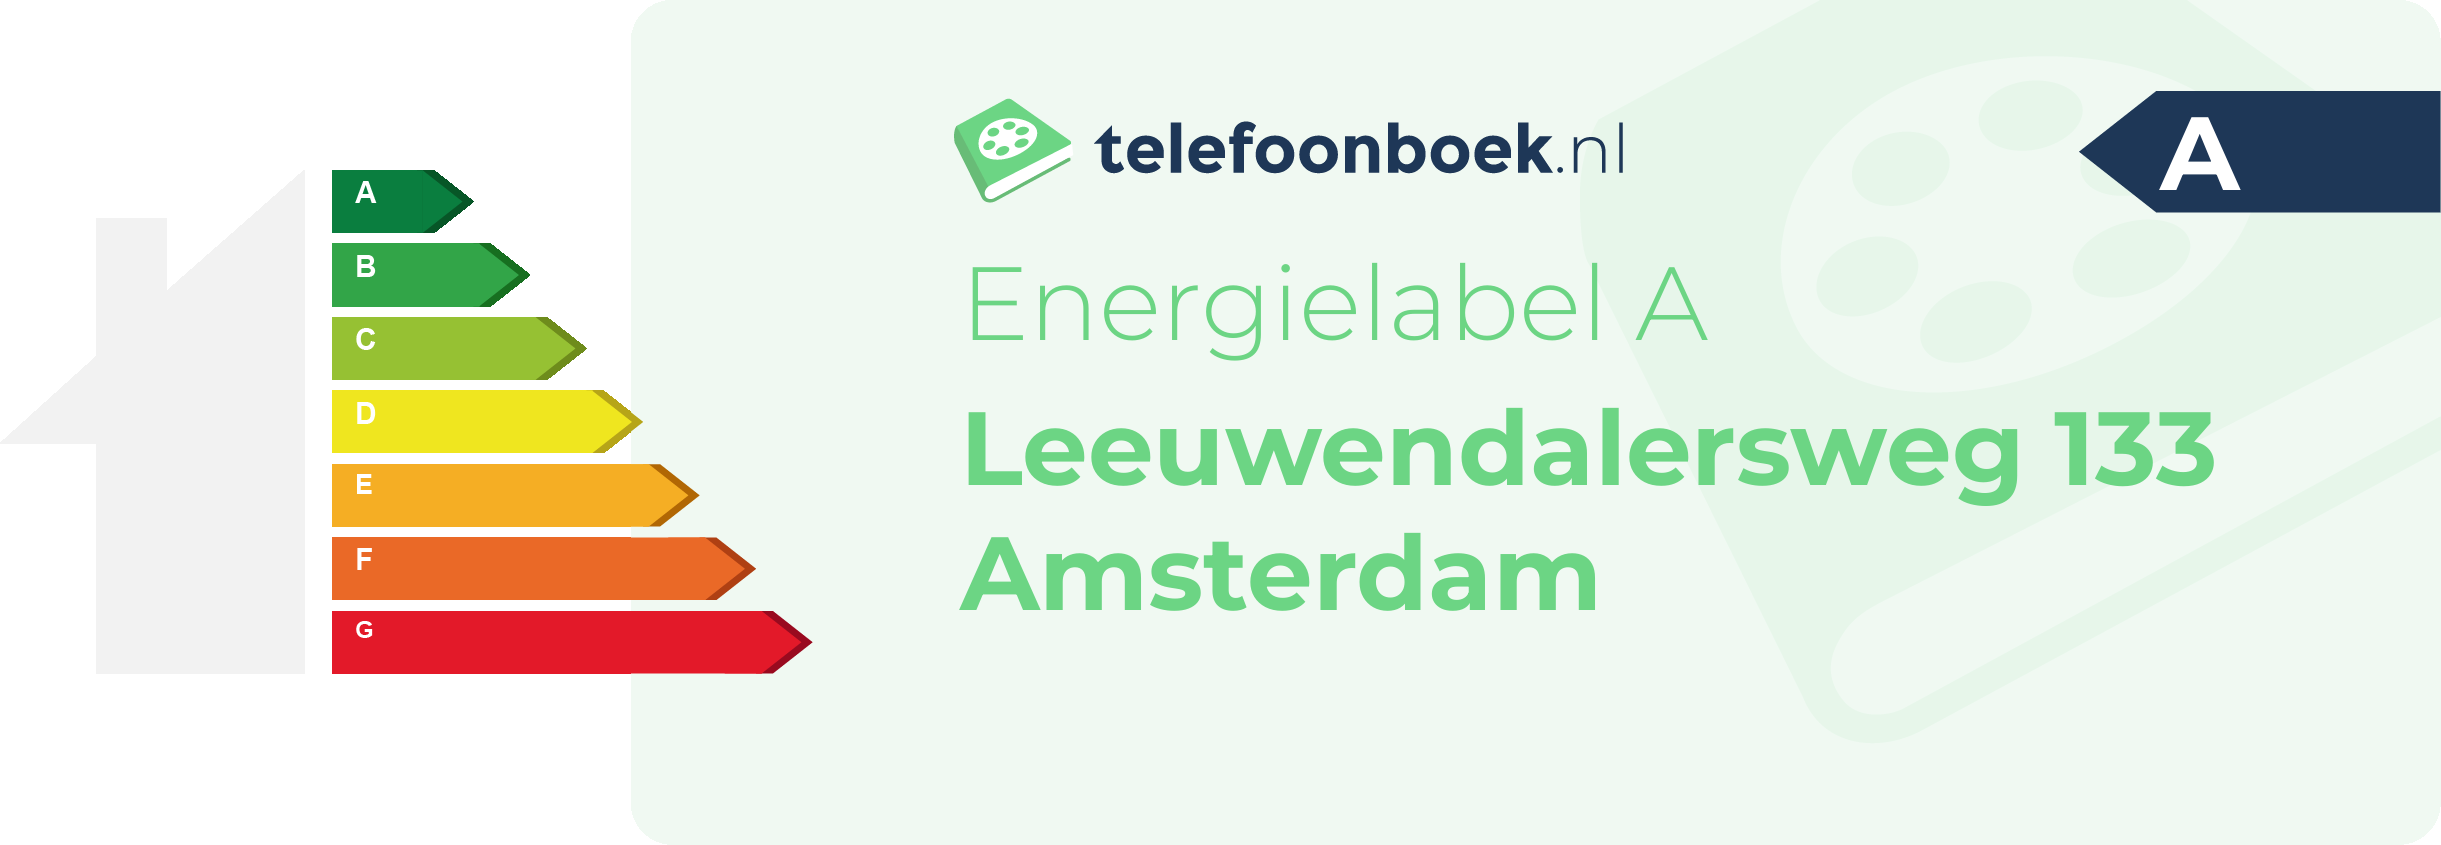 Energielabel Leeuwendalersweg 133 Amsterdam